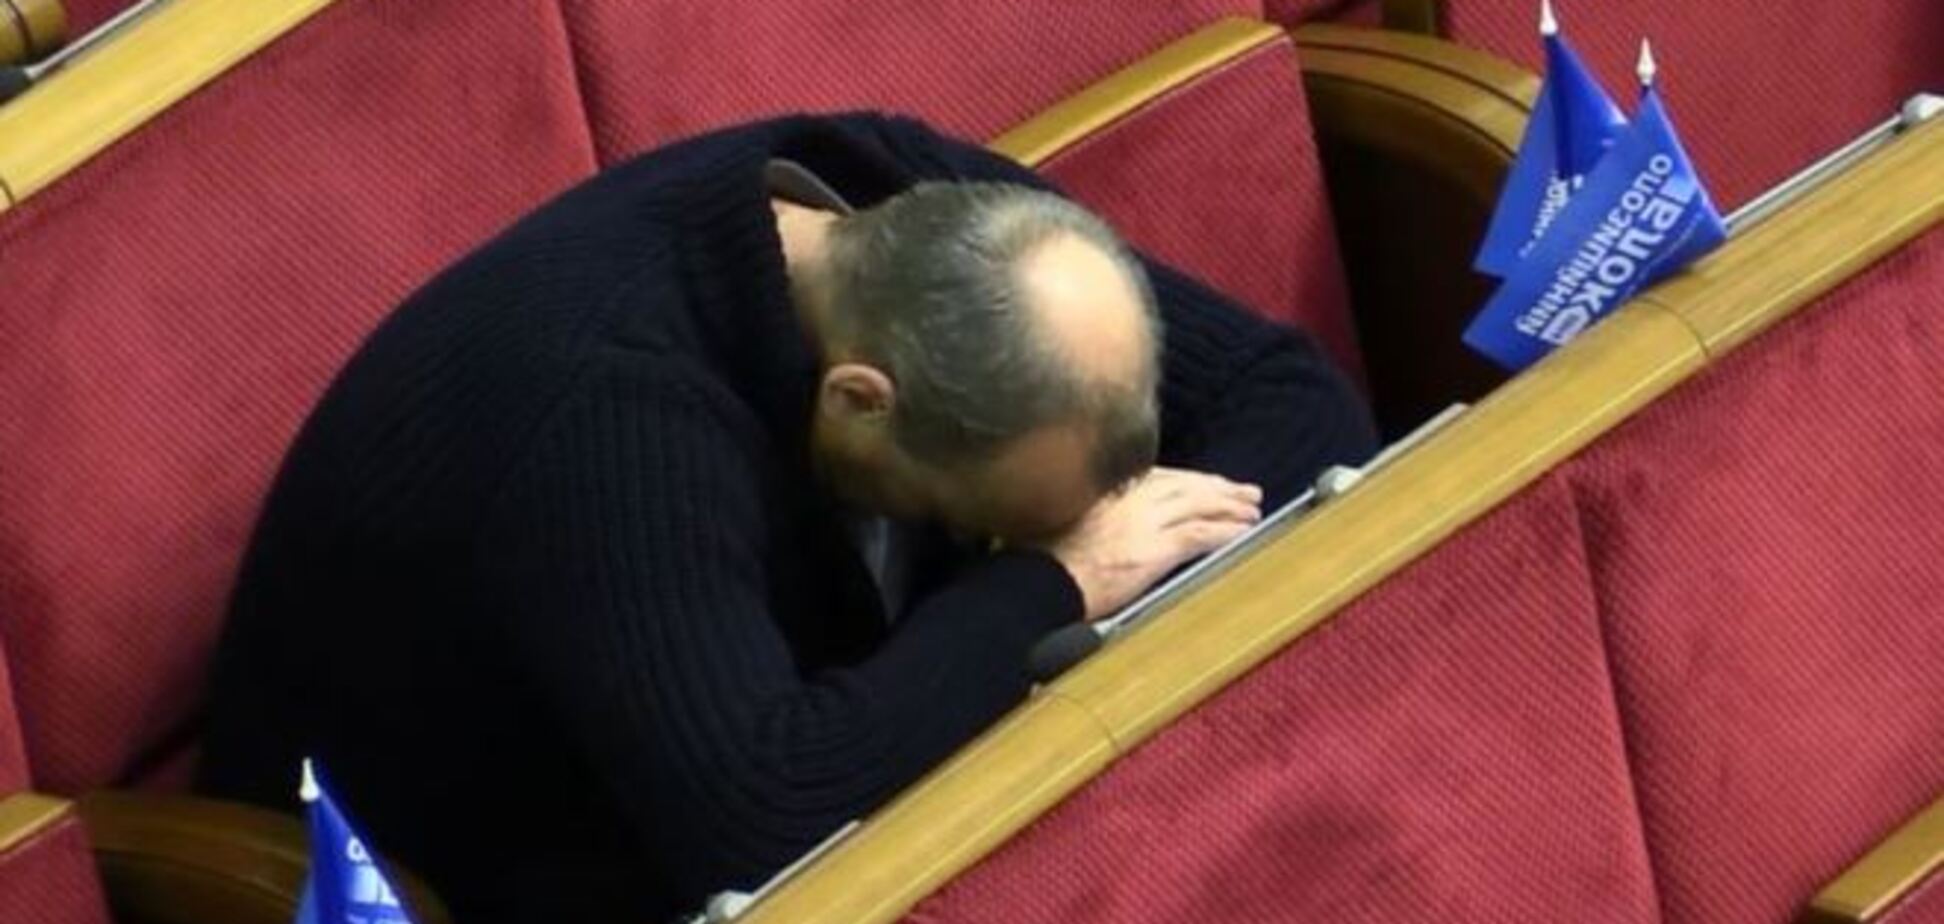 Сны про бюджет. Нардепы засыпали прямо в сессионном зале: опубликованы фото